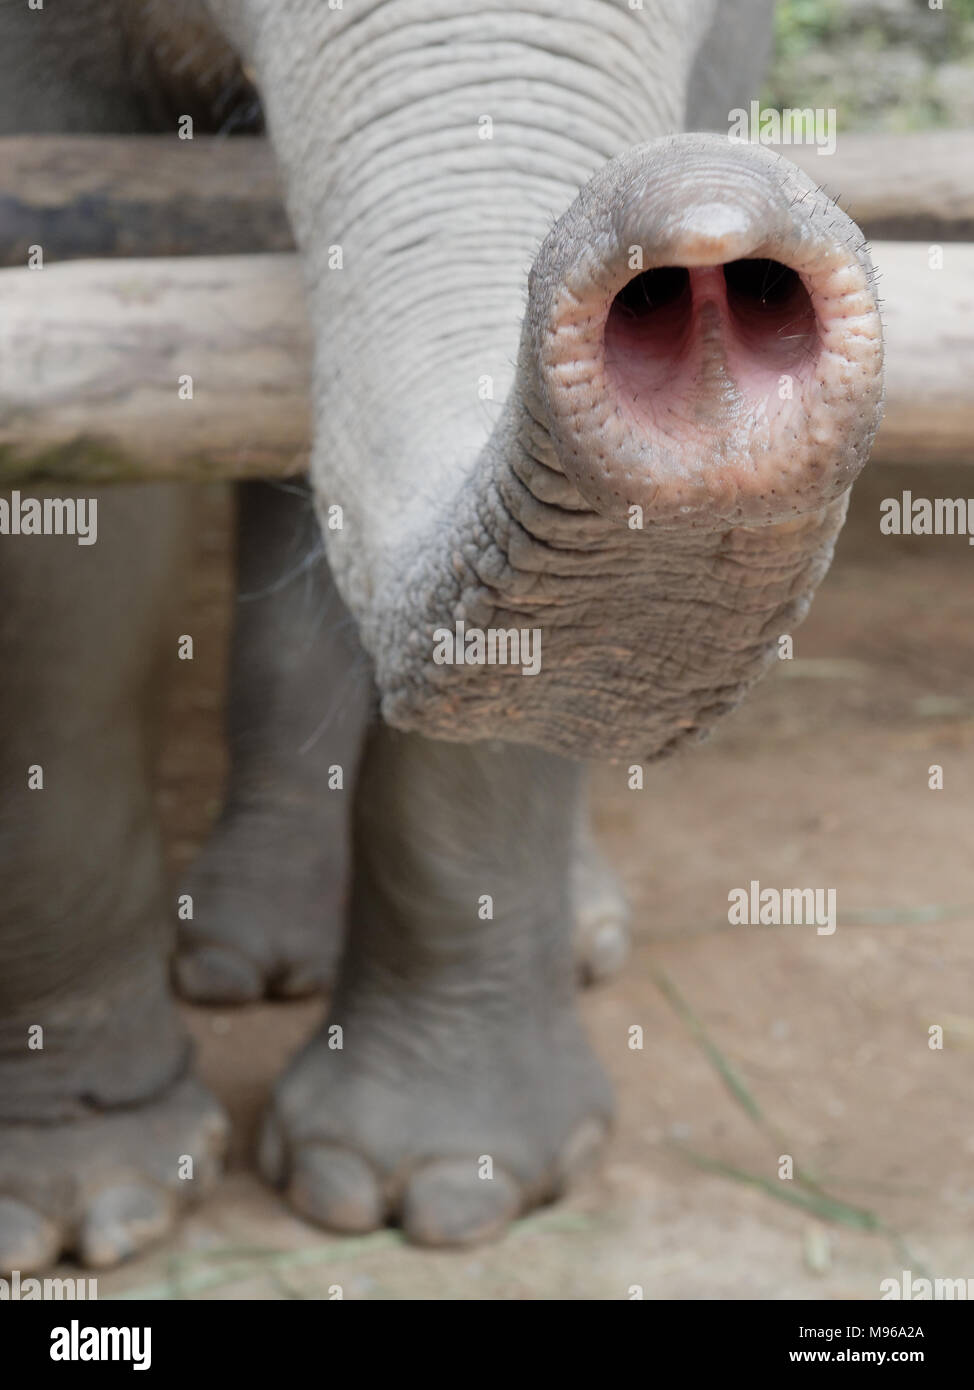 Nahaufnahme Der Russel Des Elefanten Oder Die Nase Mit Teilen Der Beine Und Fusse Mit Naturlichen Zerknittert Textur Zeigen Konzept Von Nosy Neugierigen Neugierig Und Snoopy Stockfotografie Alamy